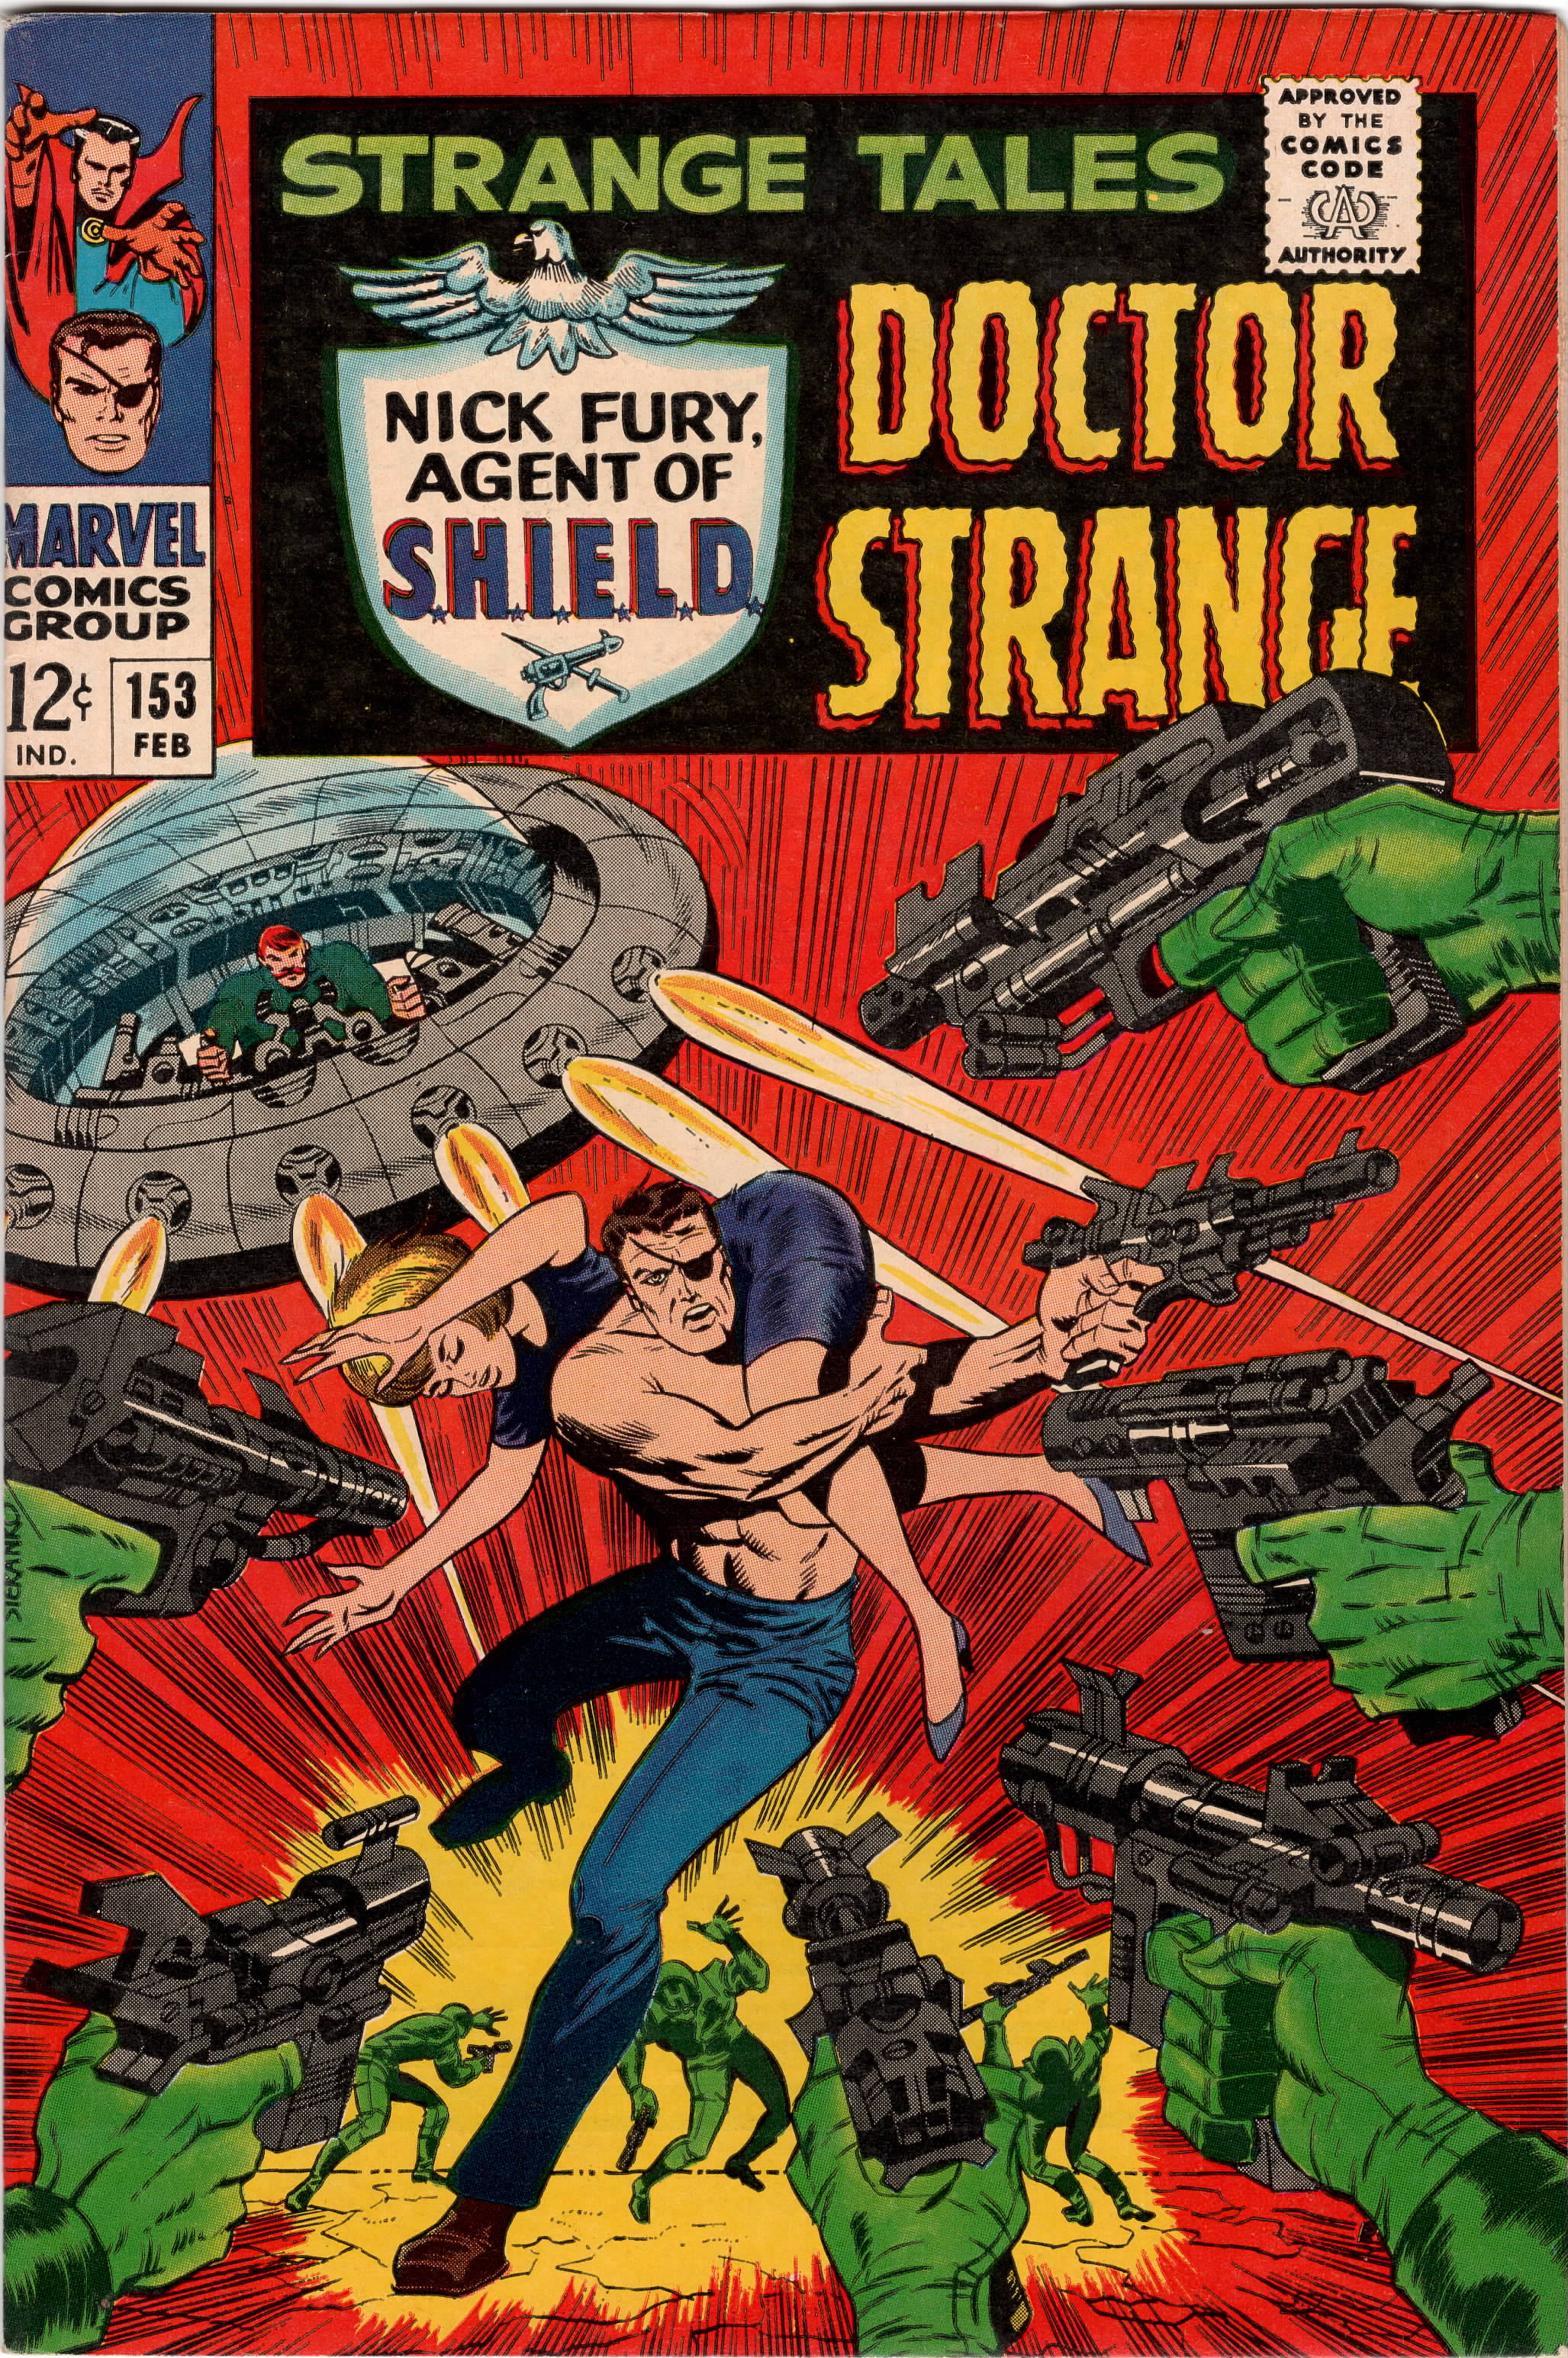 Strange Tales (Vol 1) #153